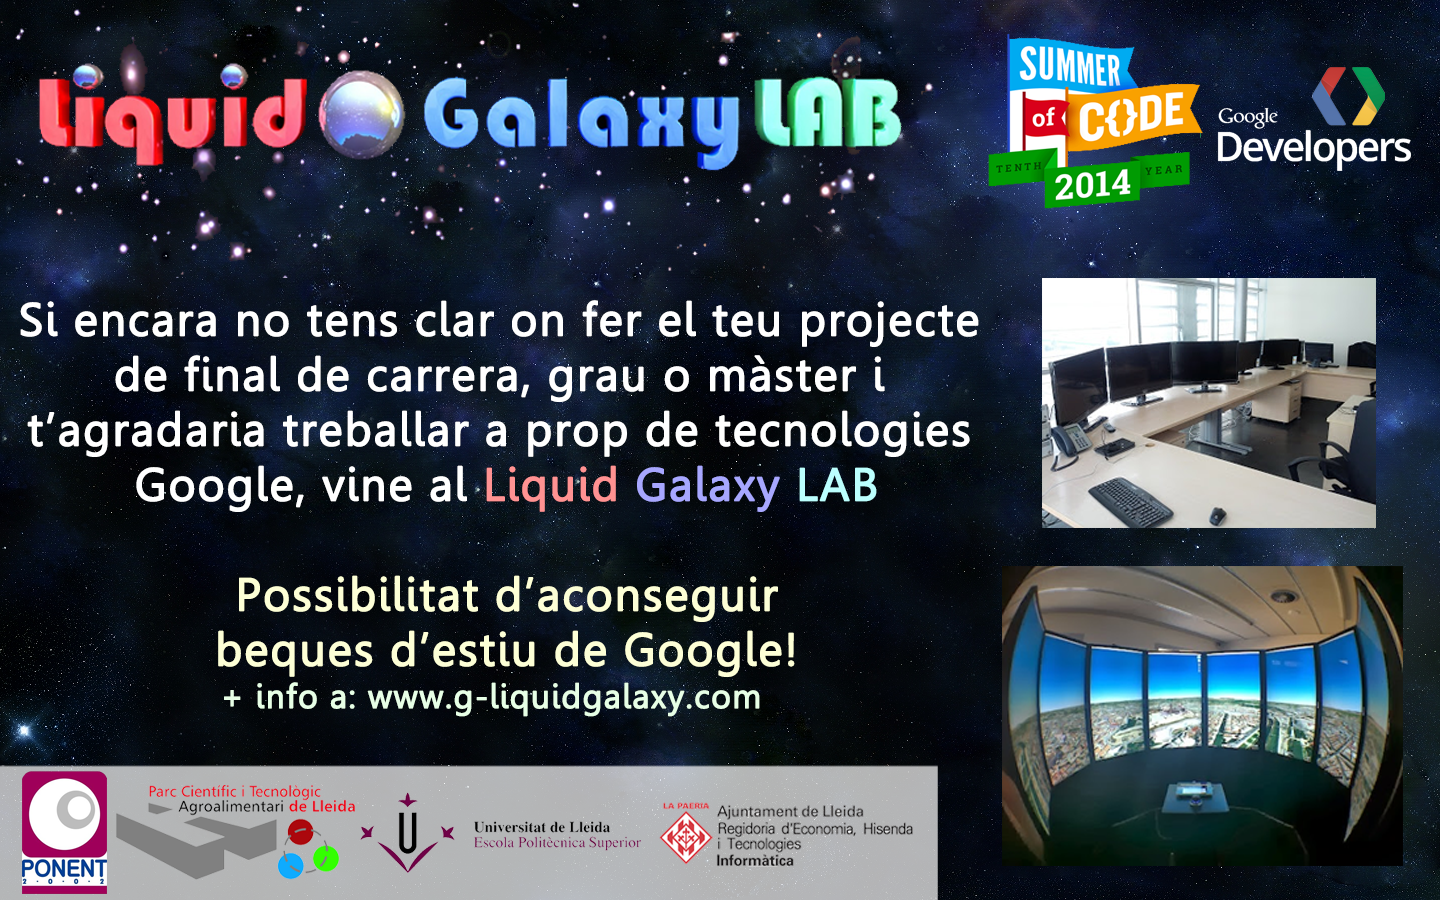 De nuevo soy mentor en el programa de Becas de #Google Summer of Code #GSOC con el proyecto #liquidgalaxy